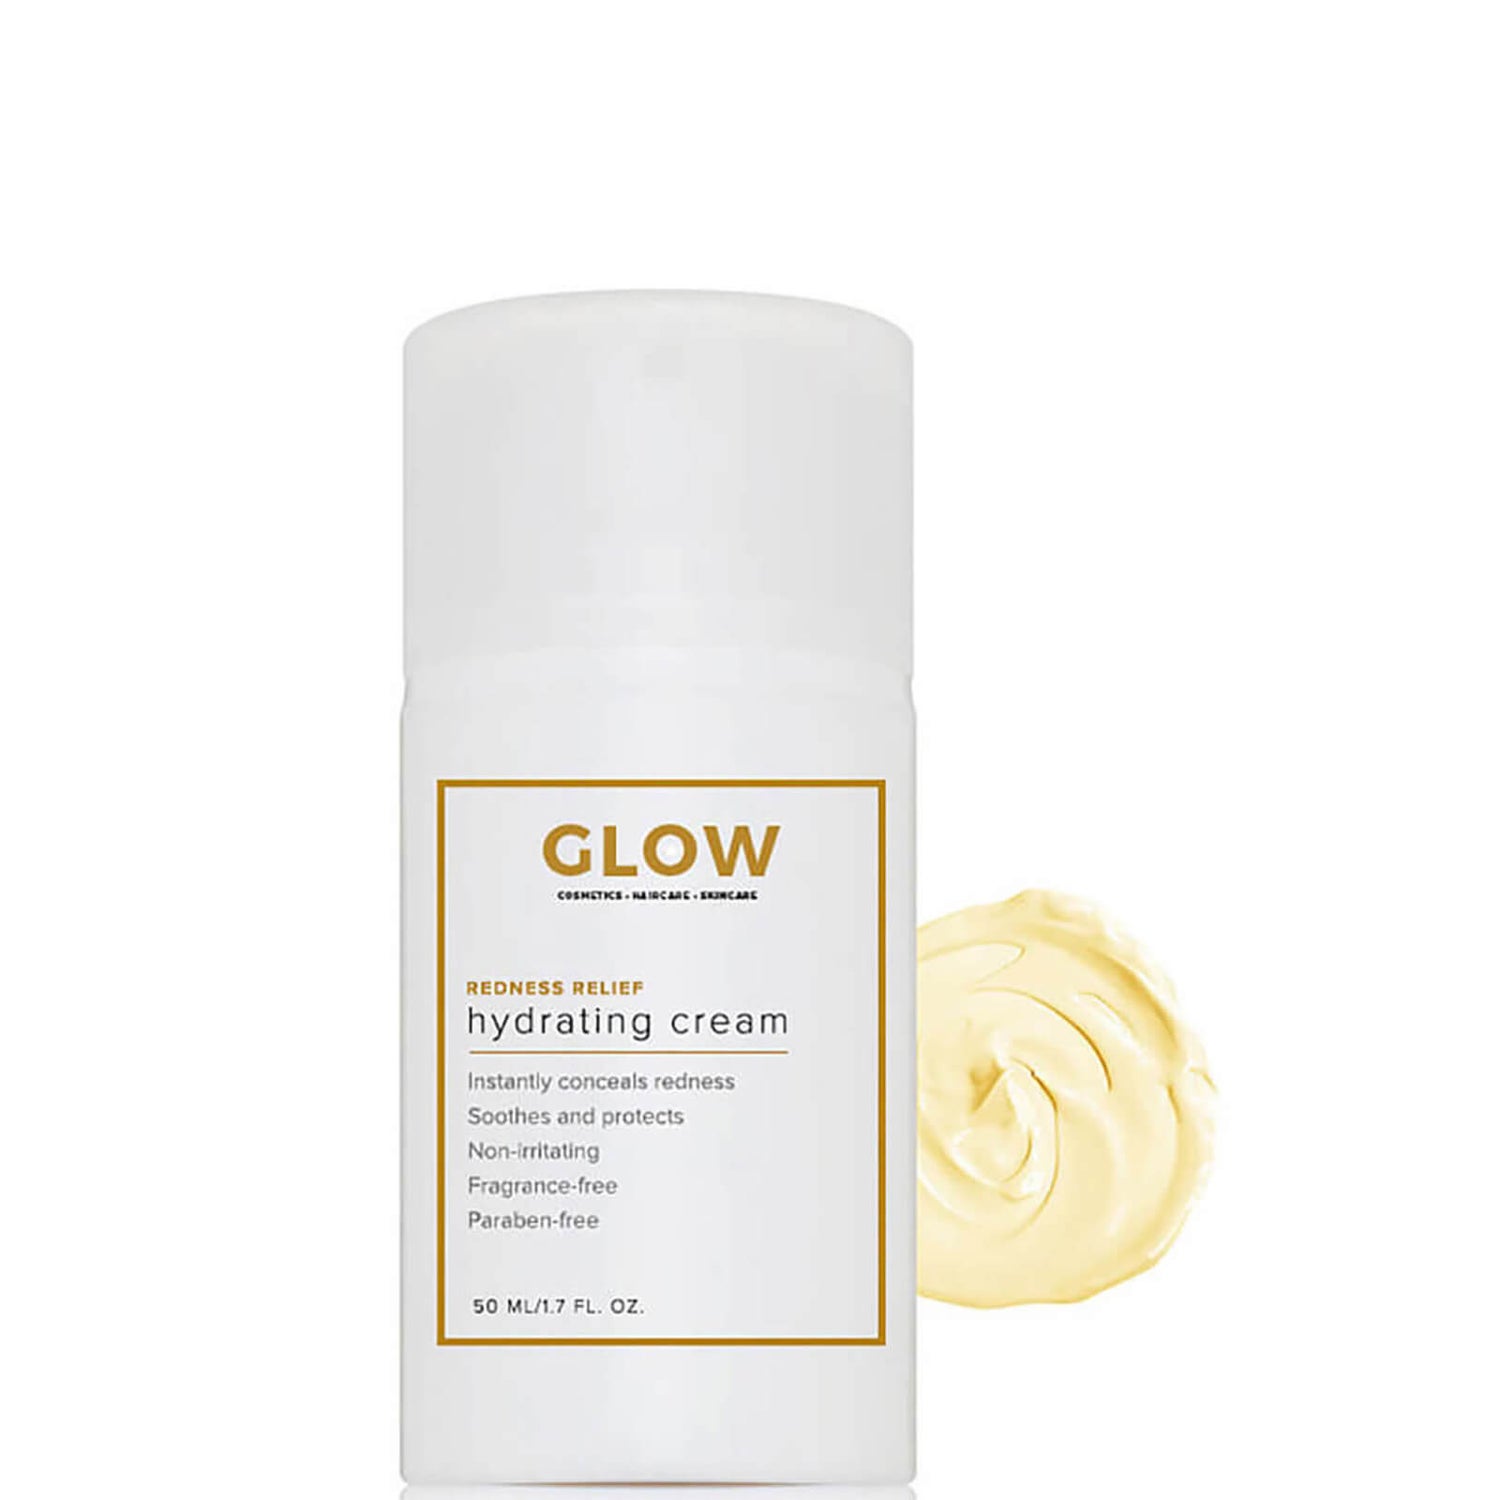 Glow Redness Relief Hydrating Cream (1.7 fl. oz.)